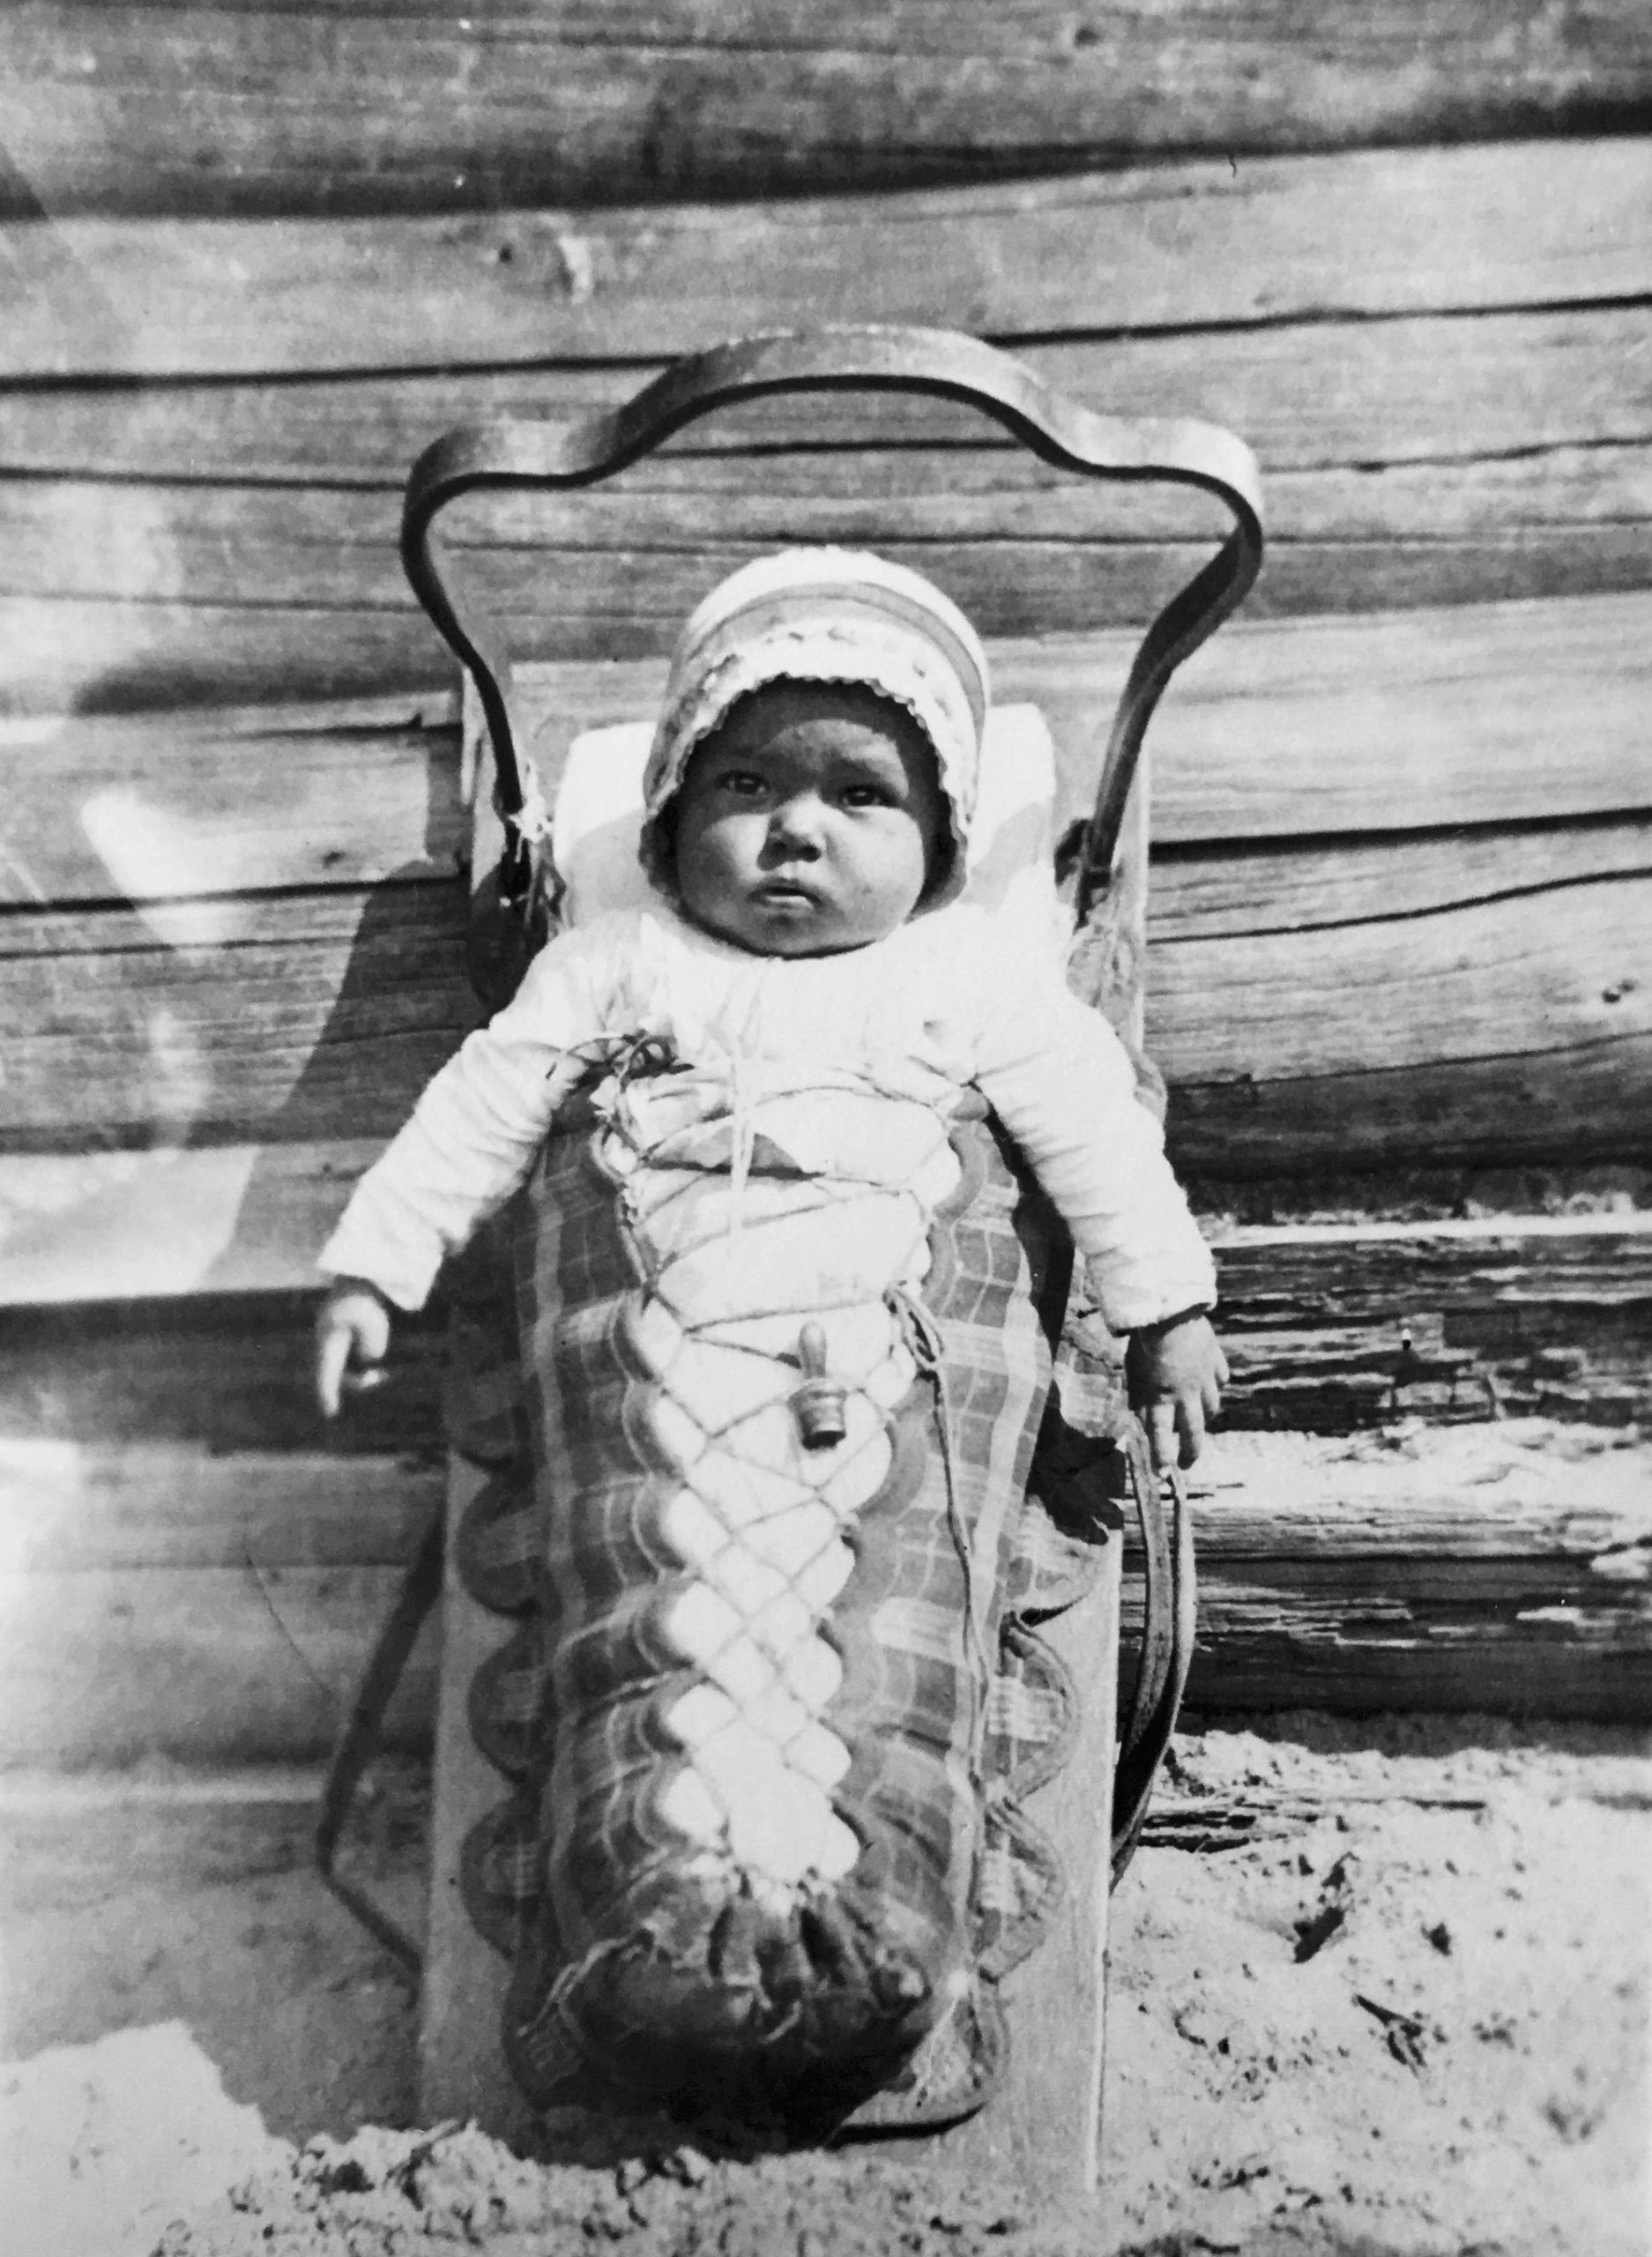 Un bébé dans son porte bébé (tikinagan). Il porte un chapeau. Ses bras sont sortis de la portion emmaillotée. Le porte bébé est placé à la verticale et est adossé au mur ce qui permet un bébé de voir autour de lui. Photo en noir et blanc.